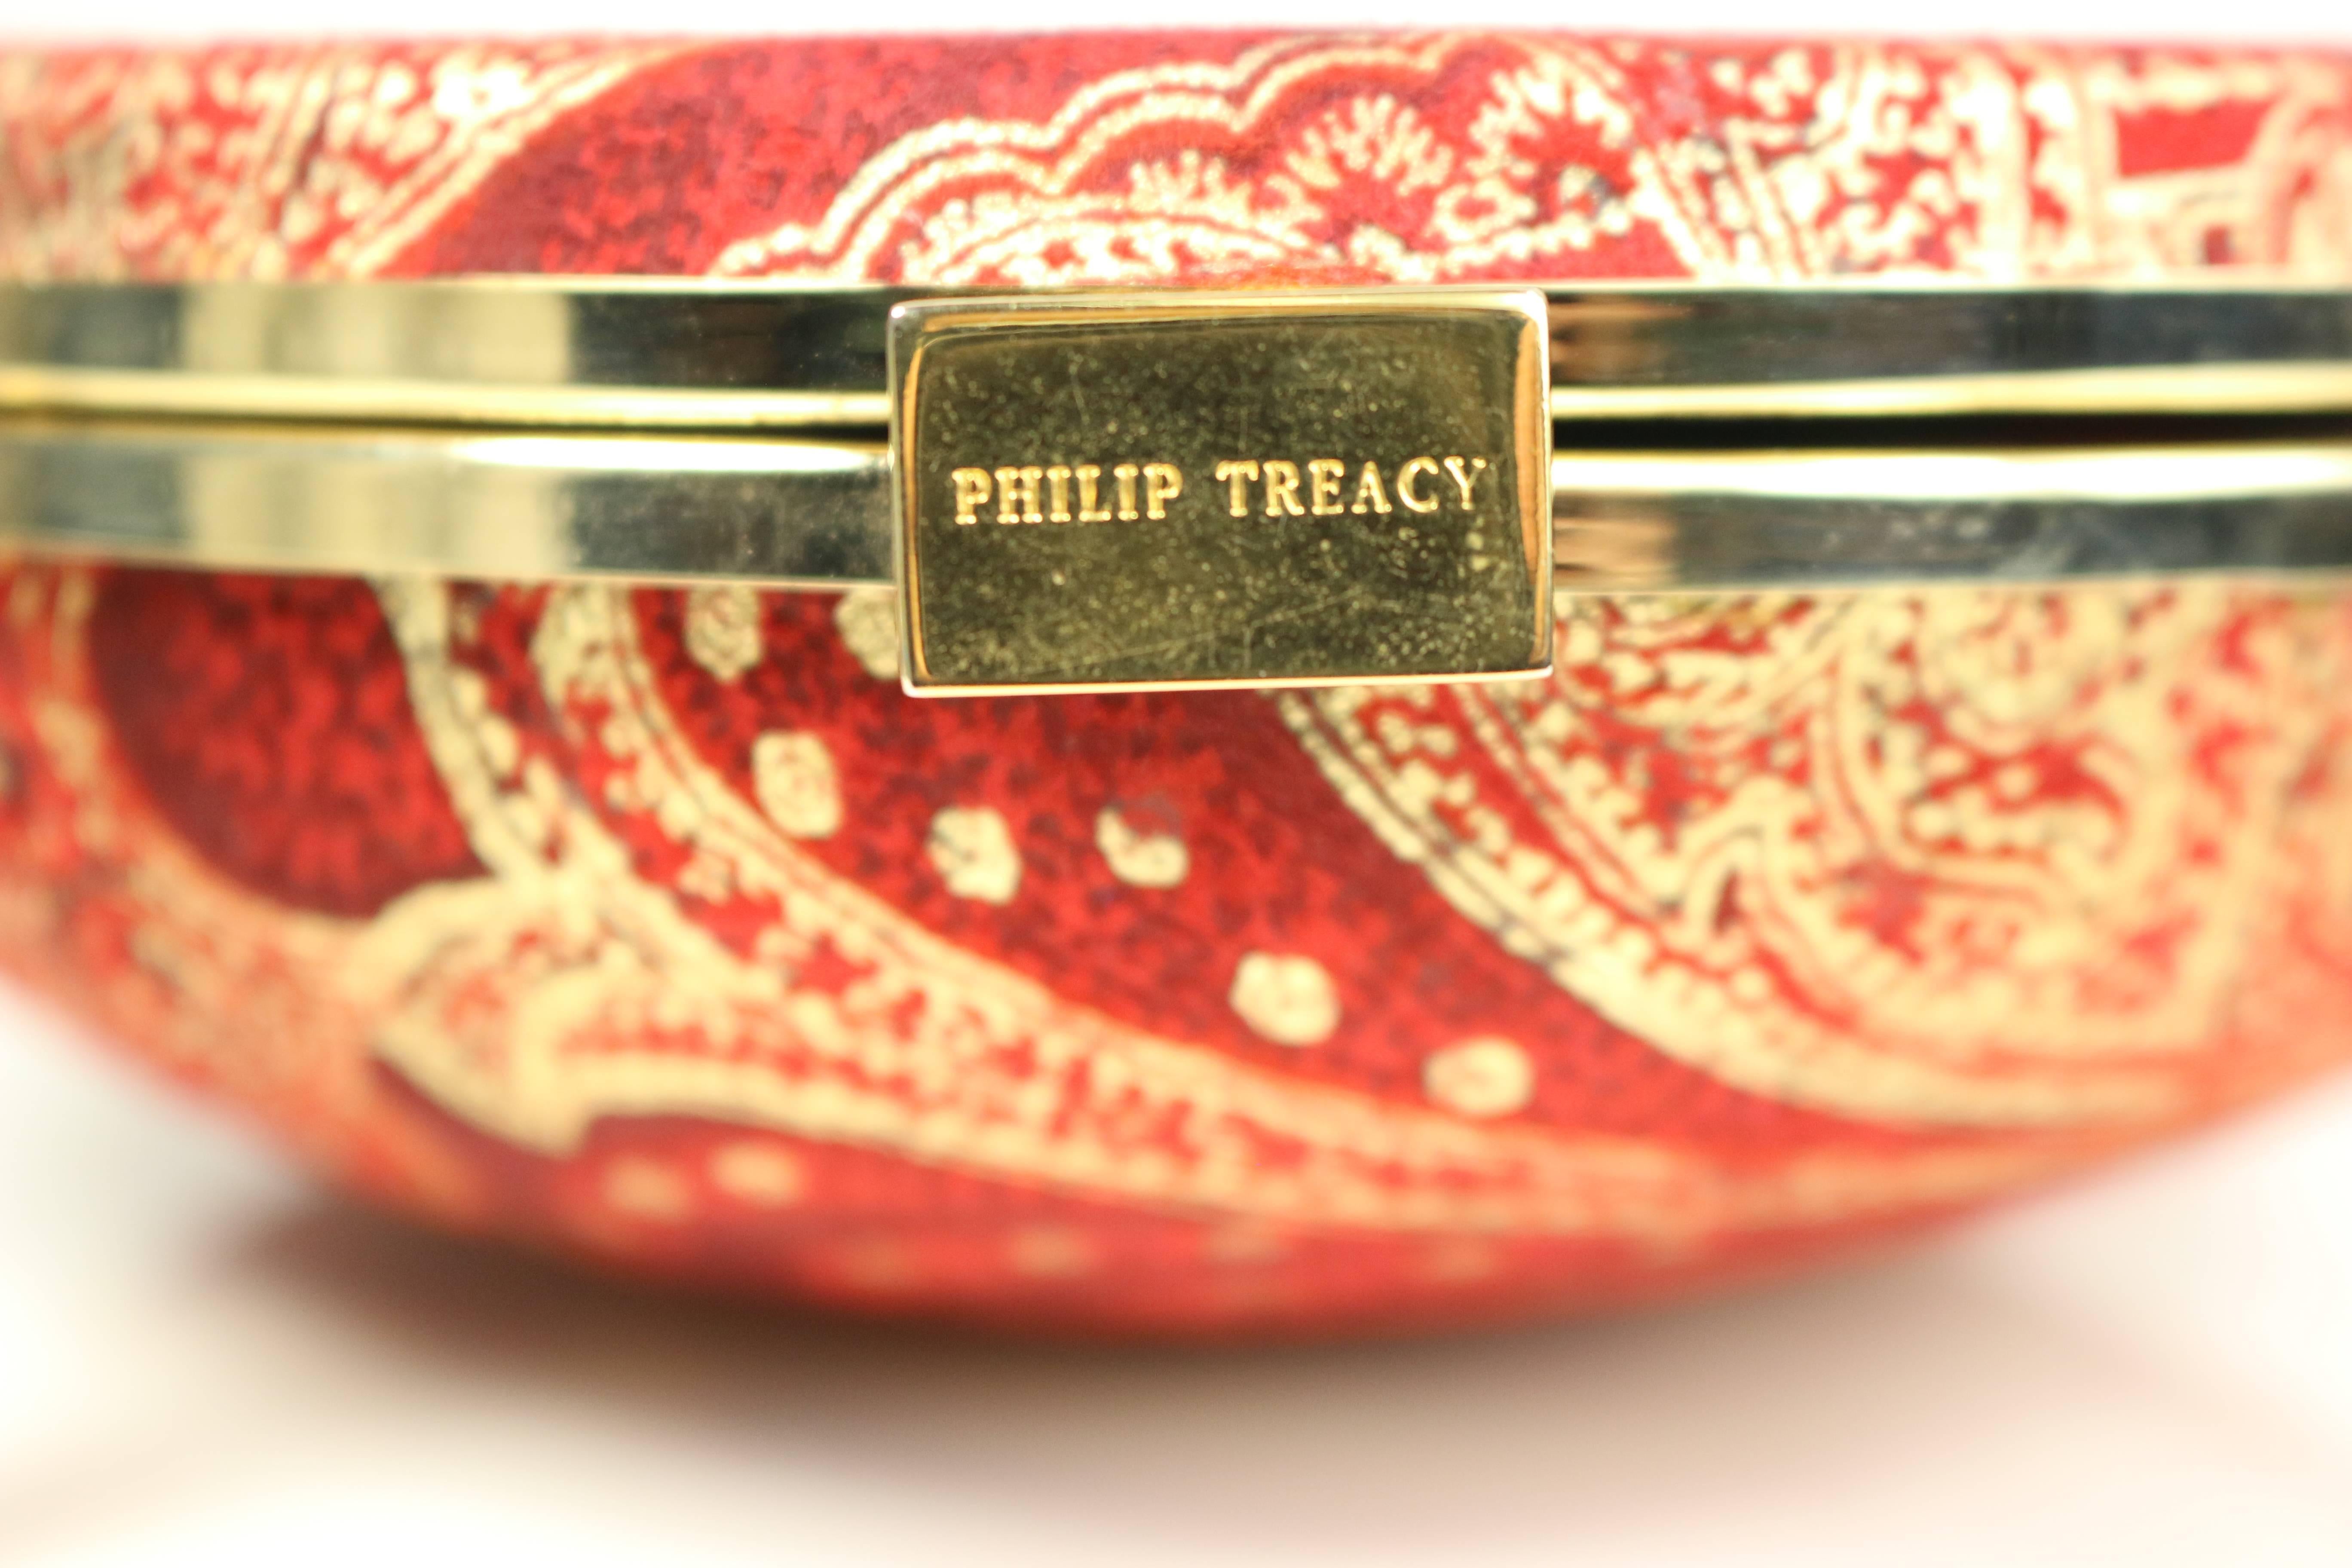 - Vintage 90s Philip Treacy rot und gold Muster drucken Kupplungen Handtasche. Selten und einmalig!

- Befestigt mit einer roten Quaste. 

- Verschluss mit goldfarbener Hardware 